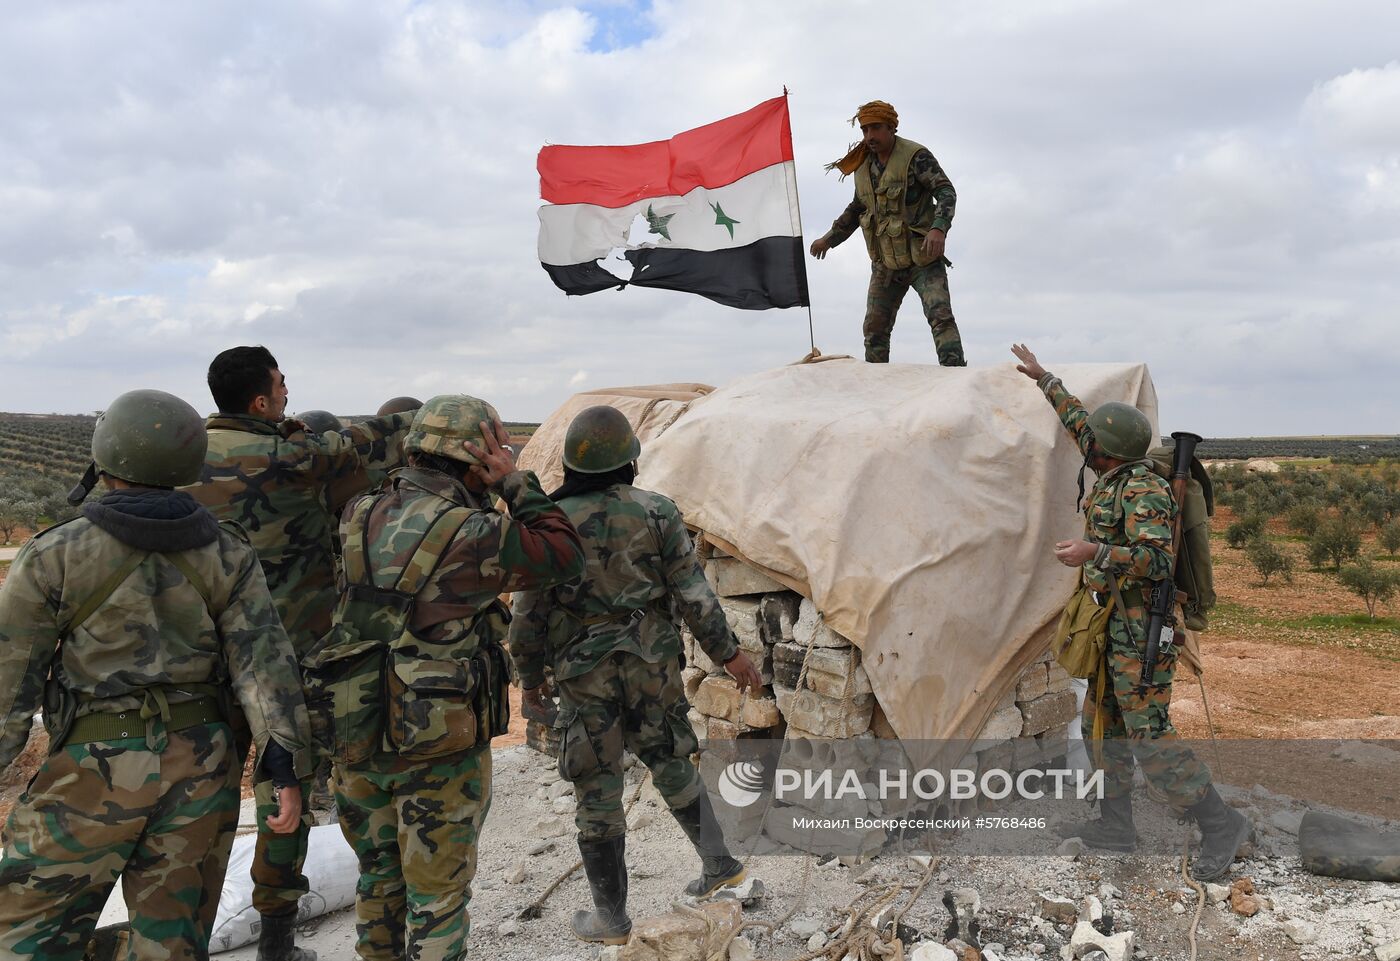 Передовые позиции сирийской армии в районе Алеппо